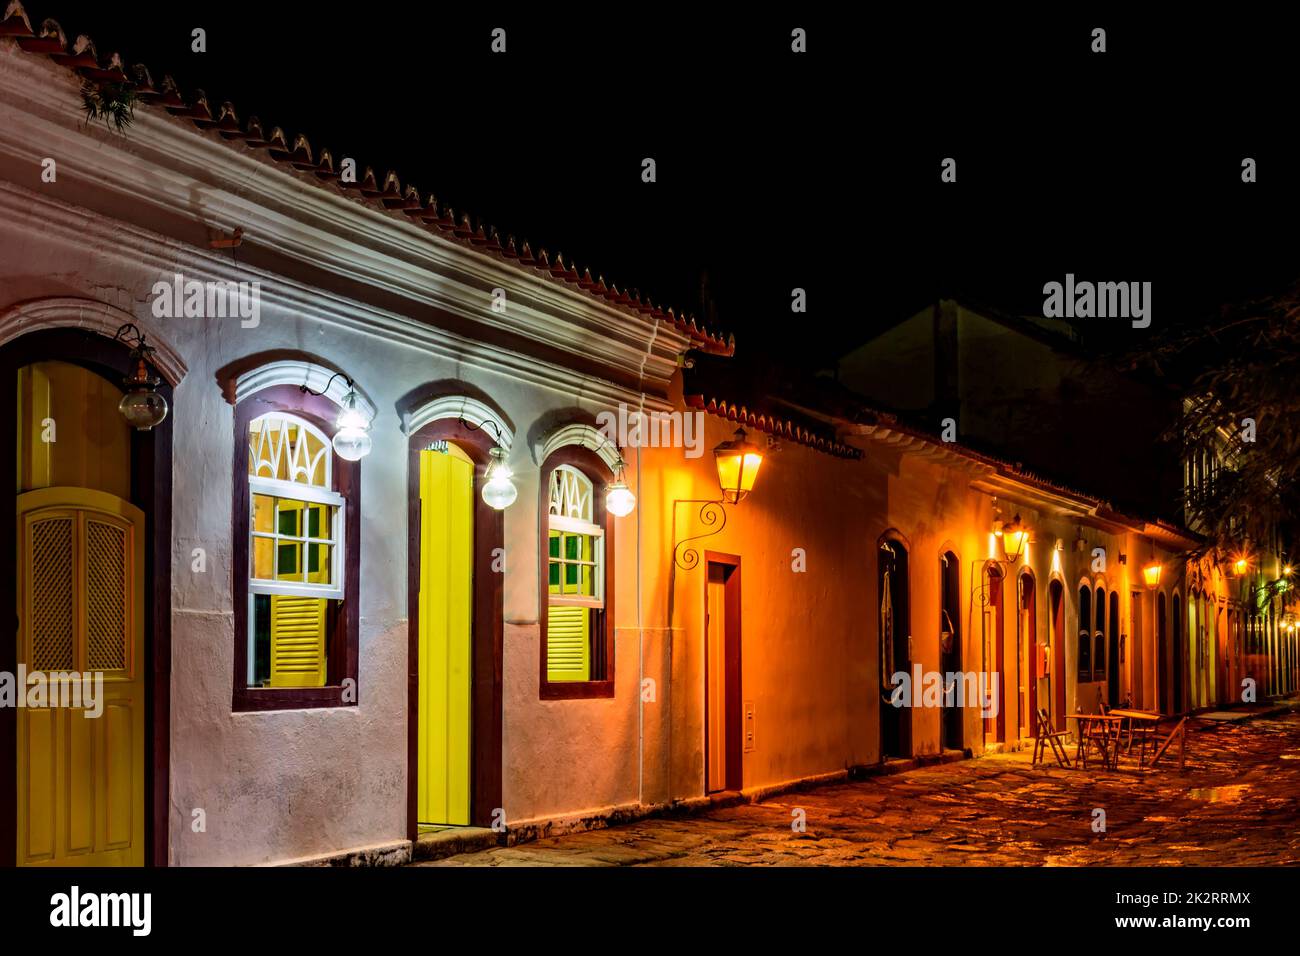 Calle de piedra y casas de estilo colonial iluminan por la noche en la ciudad de Paraty Foto de stock